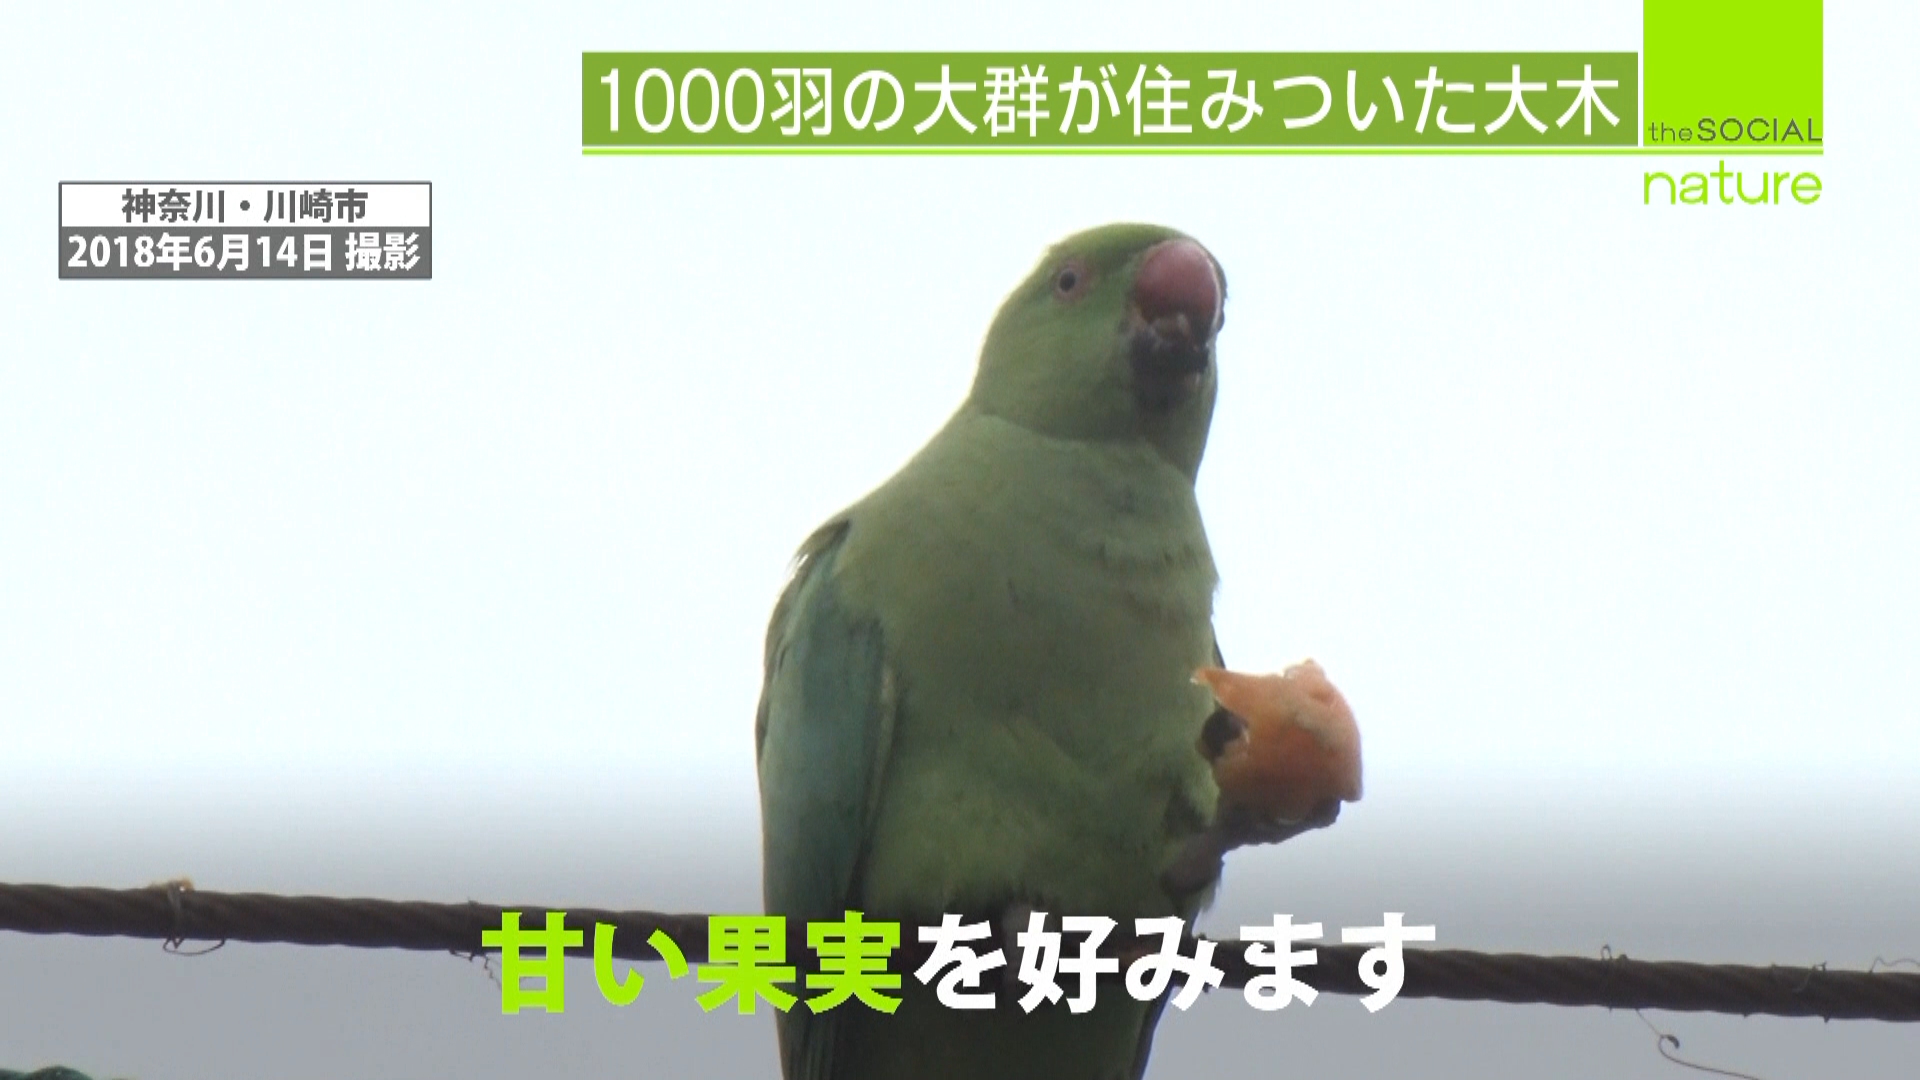 インコが大量発生 野生化したペットか 日テレnews24 Yahoo Japan